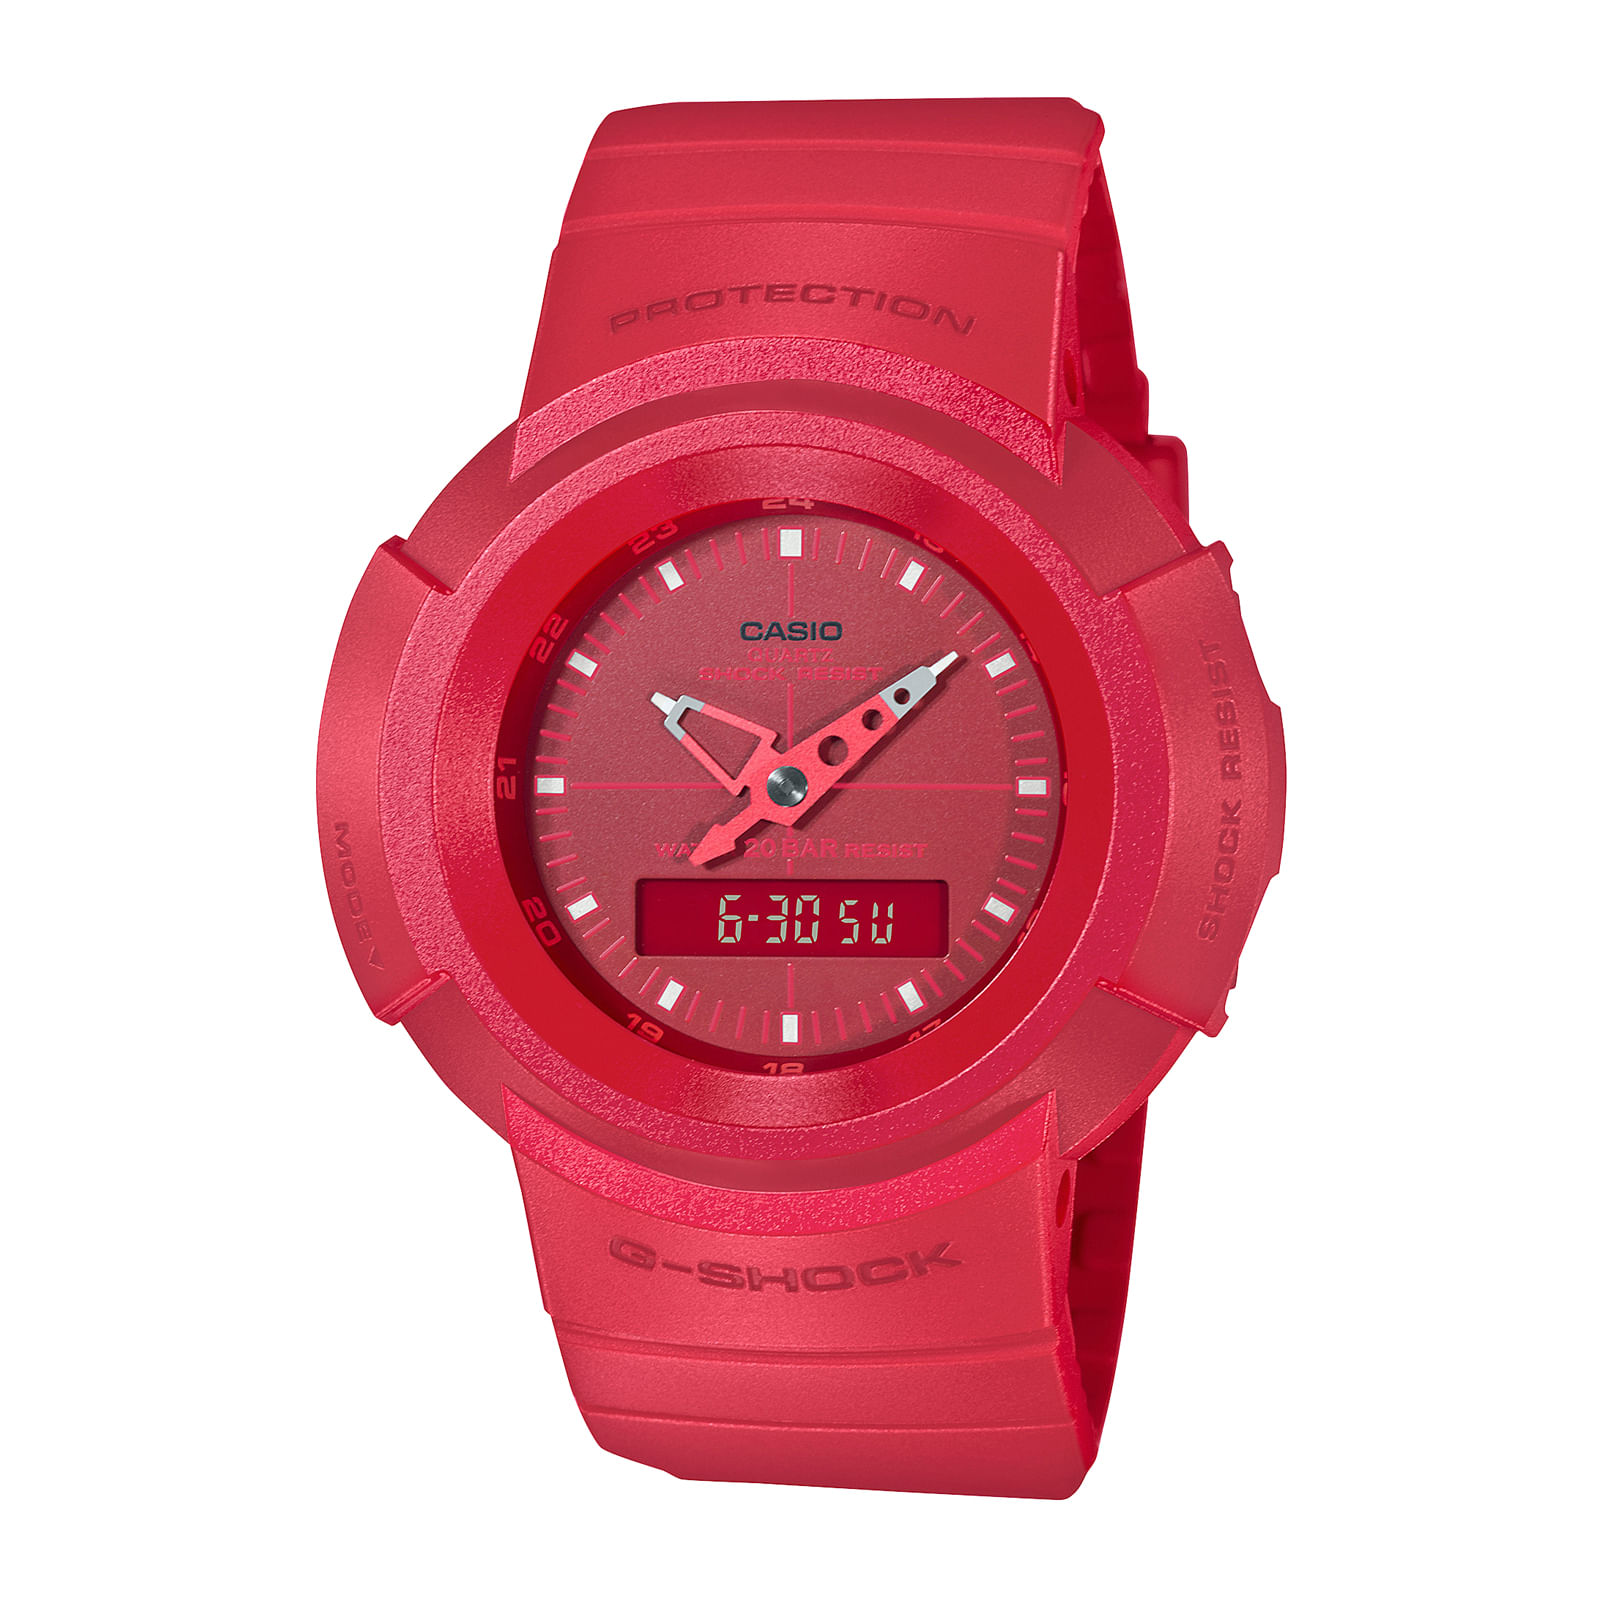 Reloj G-SHOCK AW-500BB-4E Resina Hombre Rojo